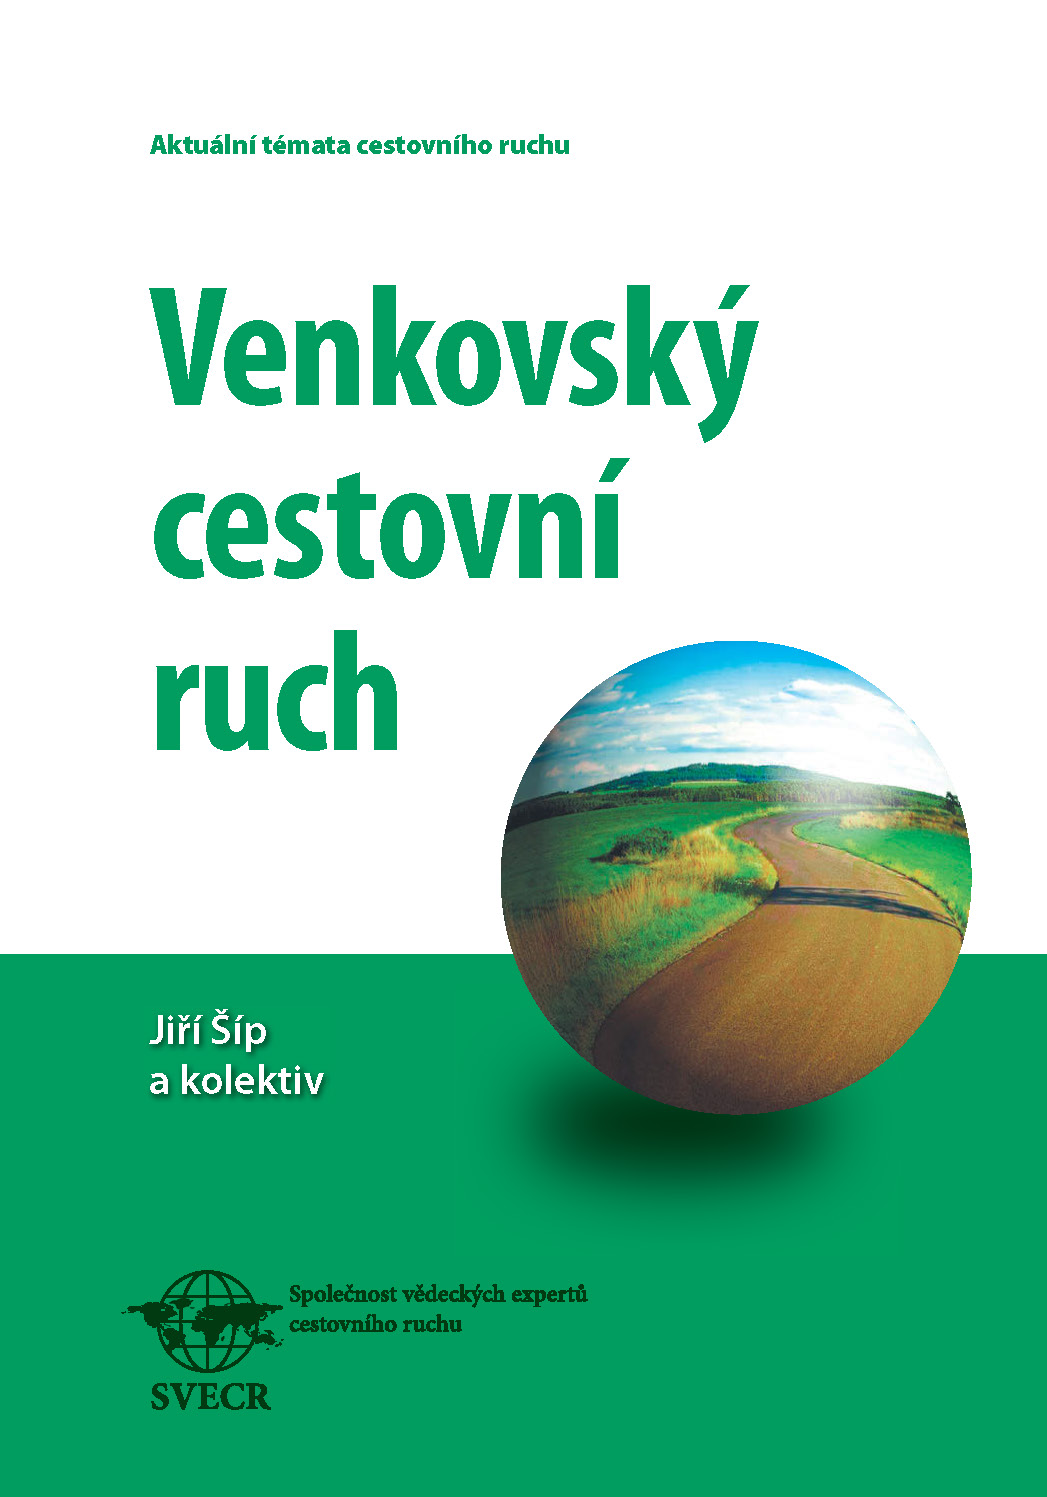 Obálka pro Venkovský cestovní ruch. Aktuální témata cestovního ruchu